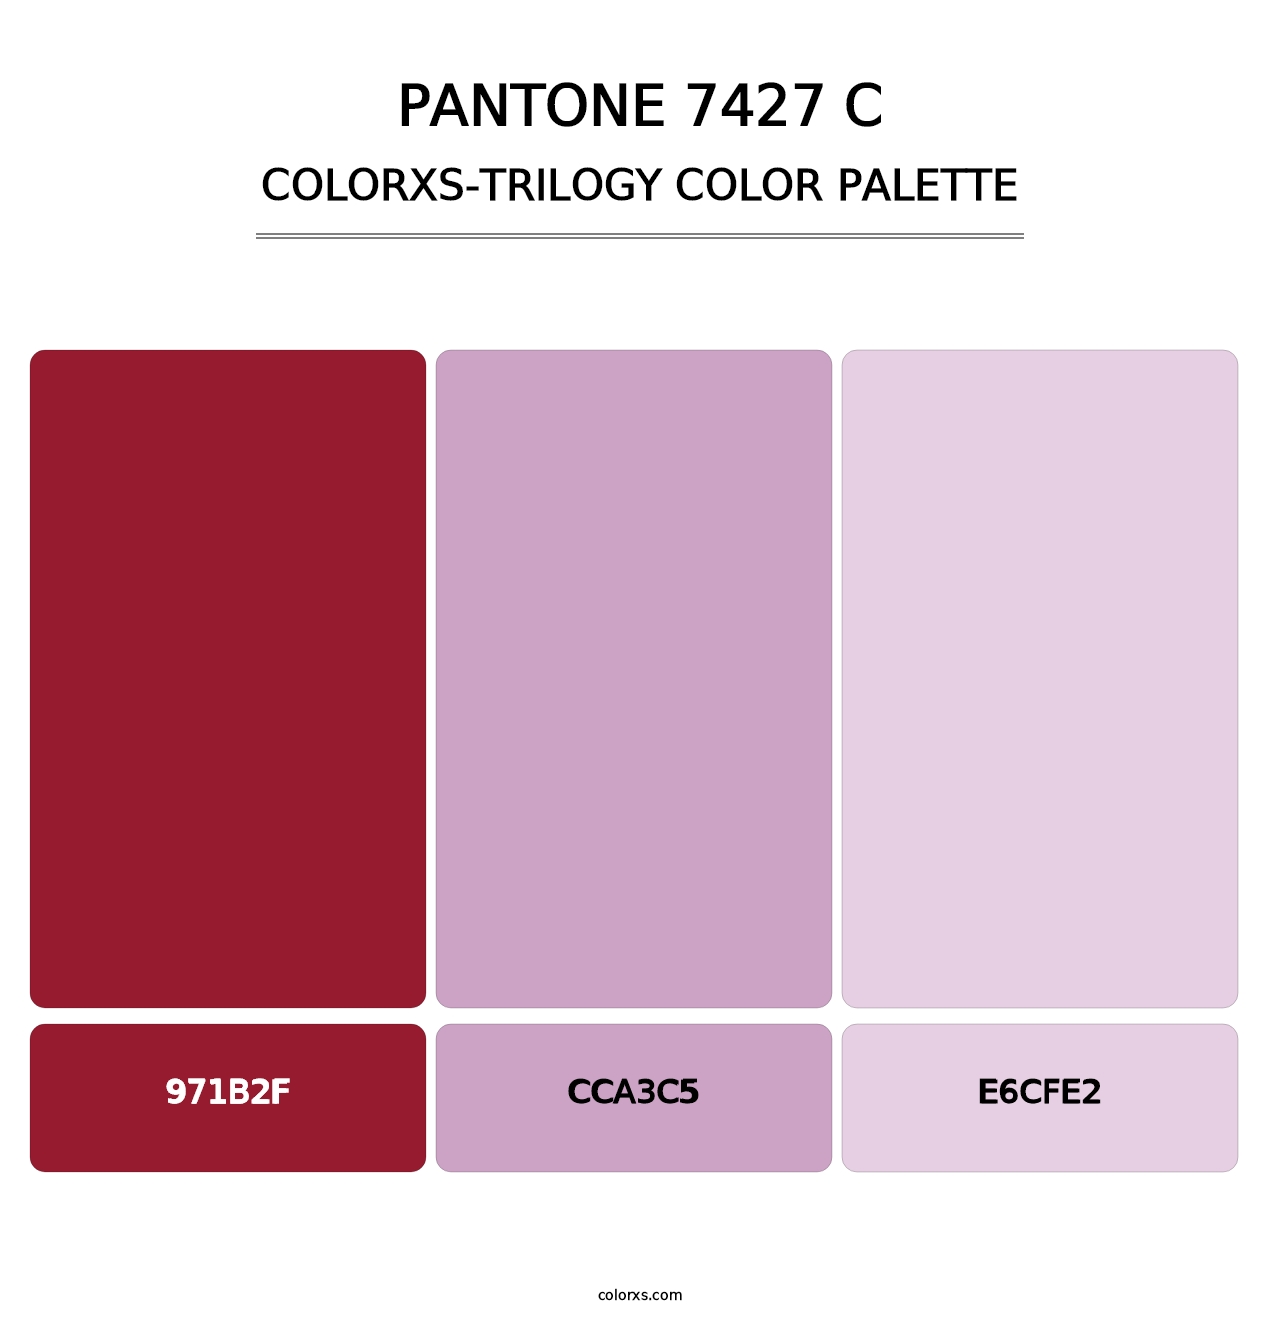 PANTONE 7427 C - Colorxs Trilogy Palette